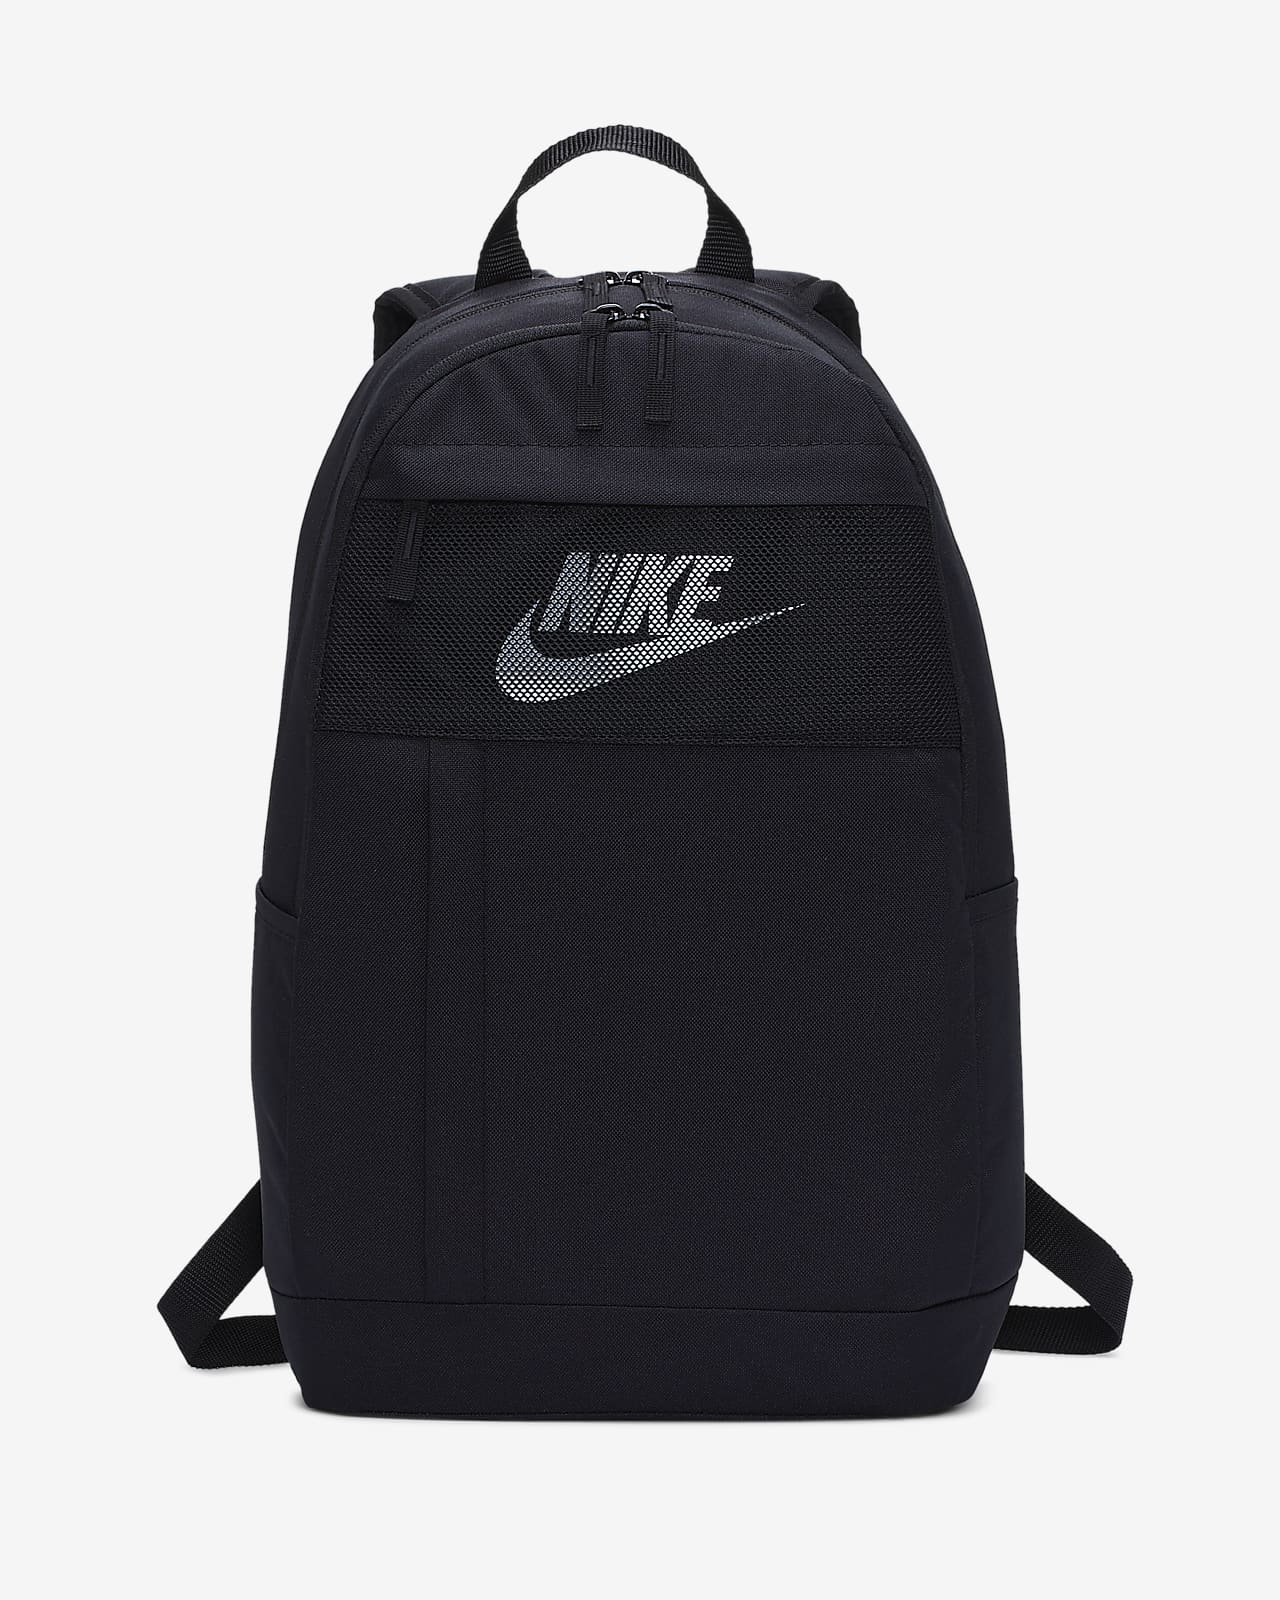 all black backpack nike